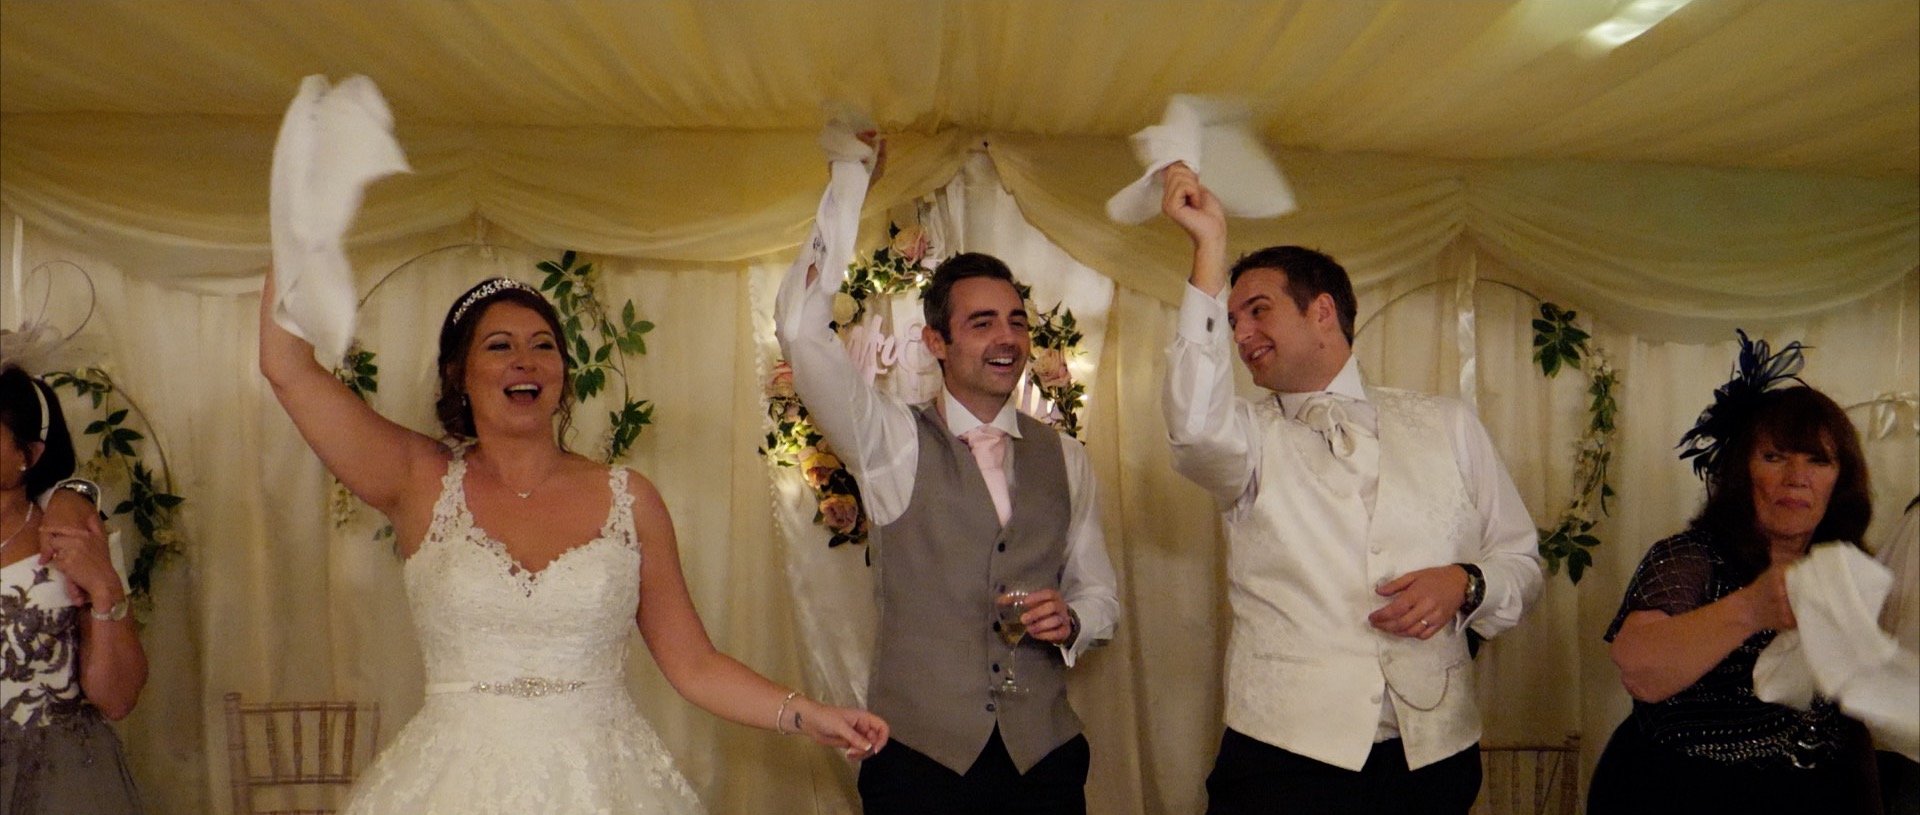 Lots of fun wedding video Essex.jpg